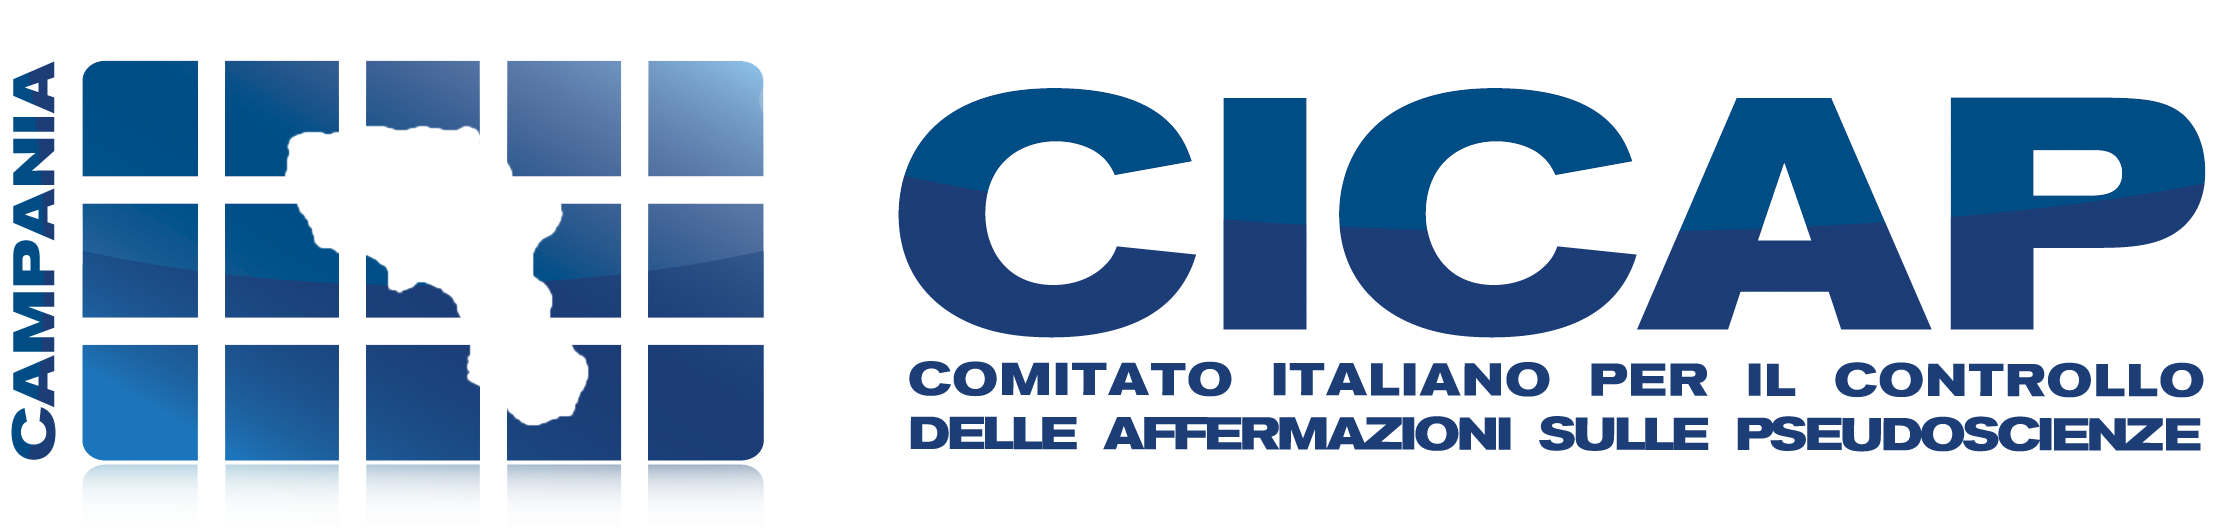 CICAP Campania – Comitato Italiano per il Controllo delle Affermazioni sulle Pseudoscienze